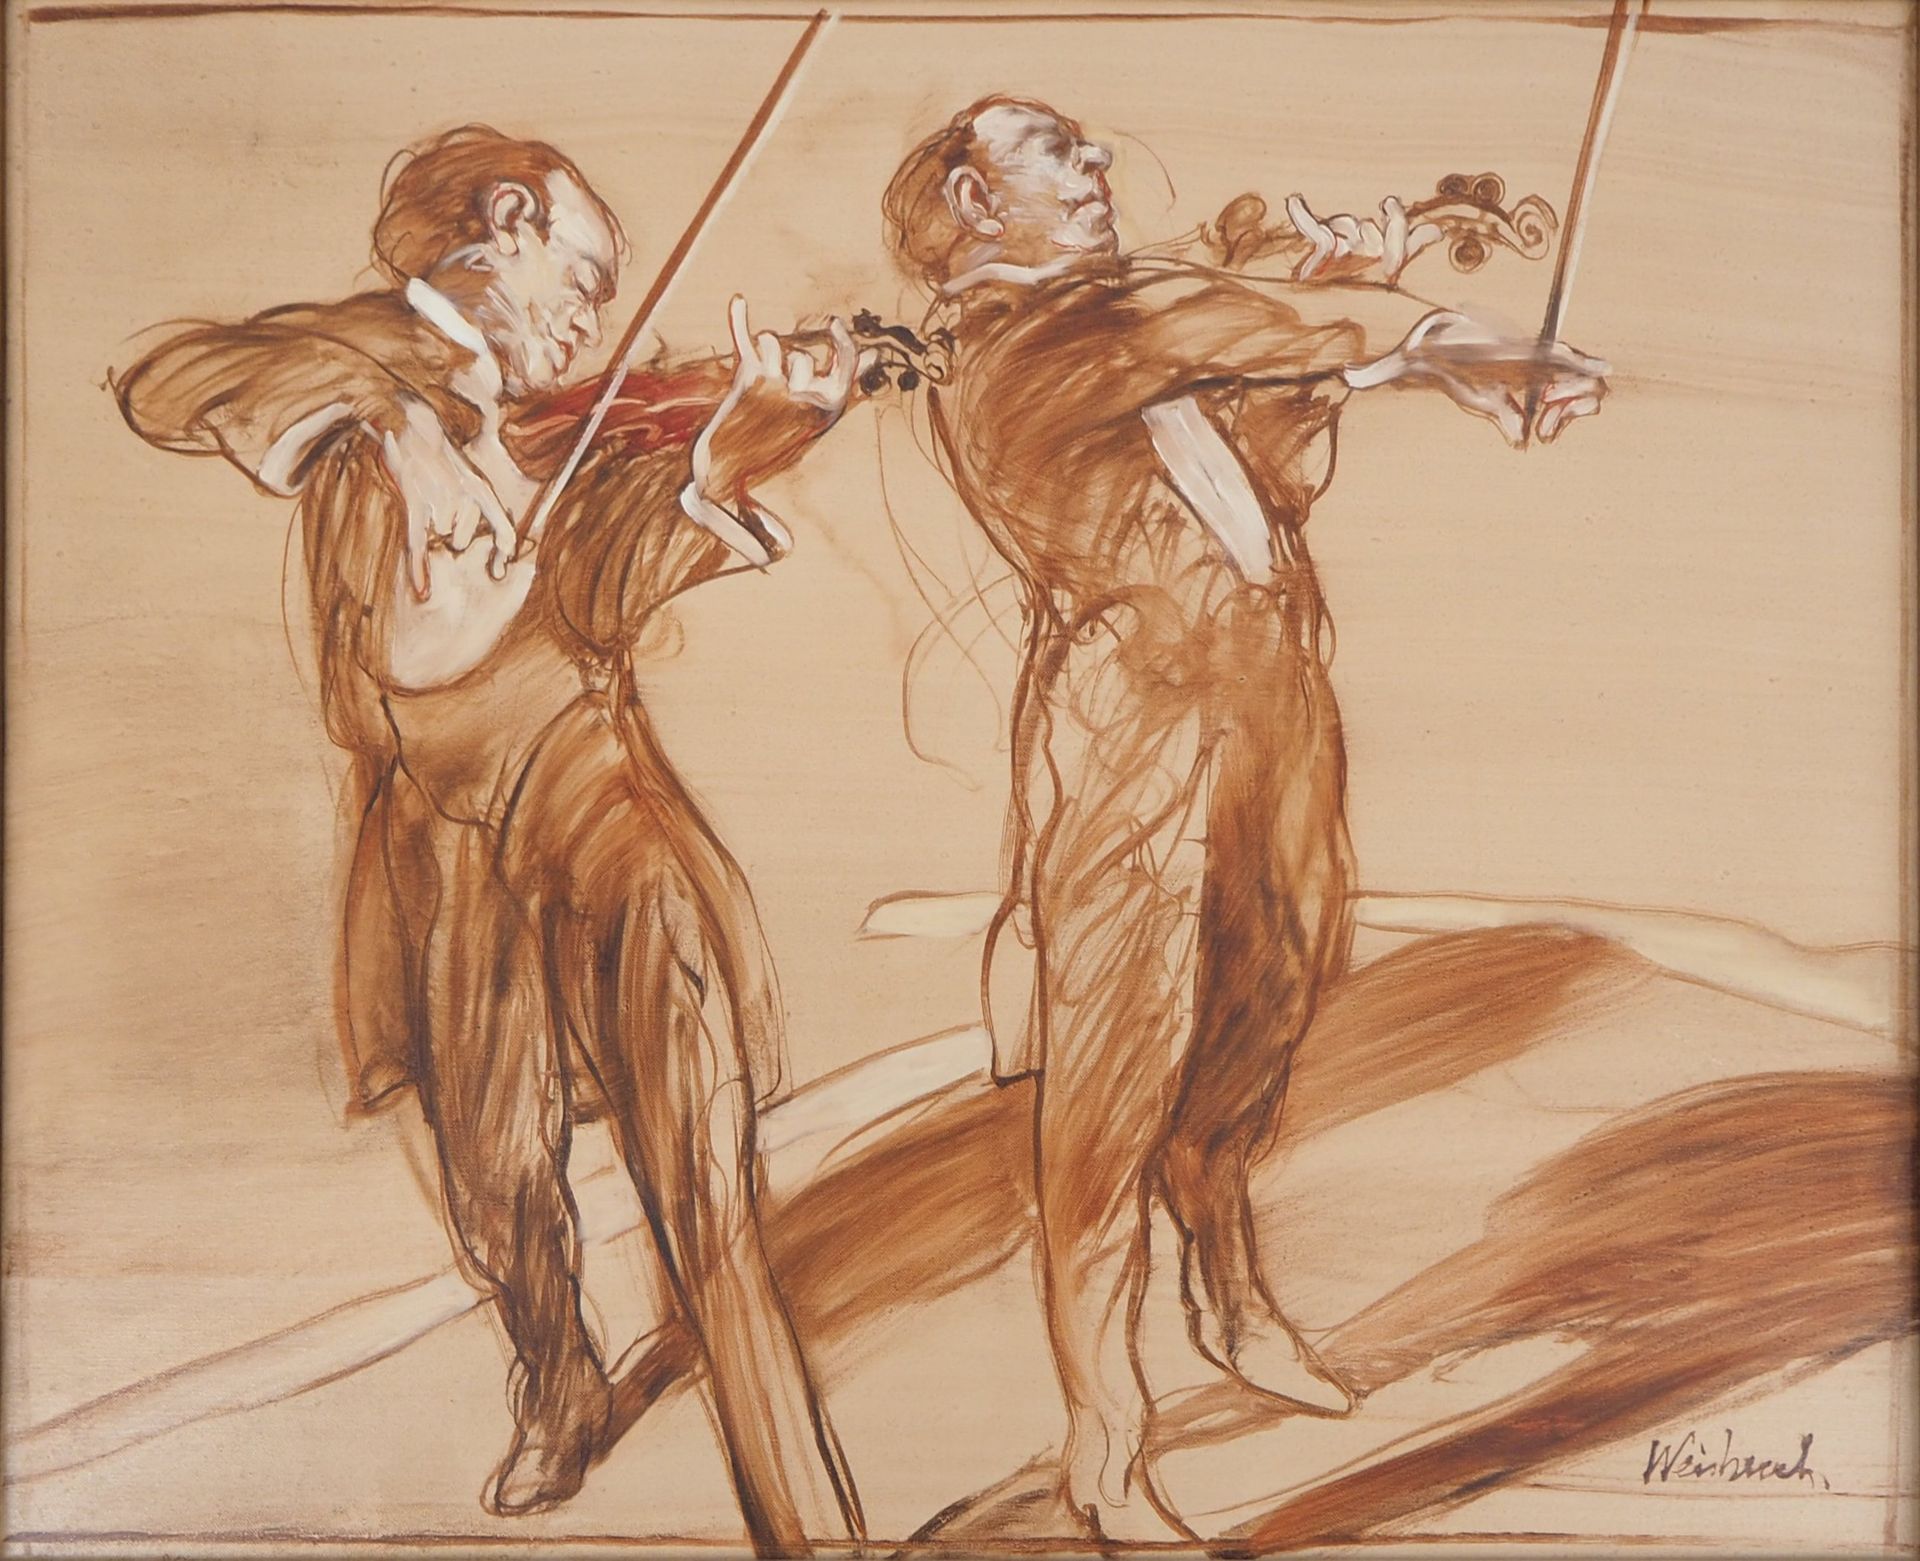 Claude WEISBUCH Claude WEISBUCH

Musik, Konzert für zwei Violinen

Öl auf Leinwa&hellip;